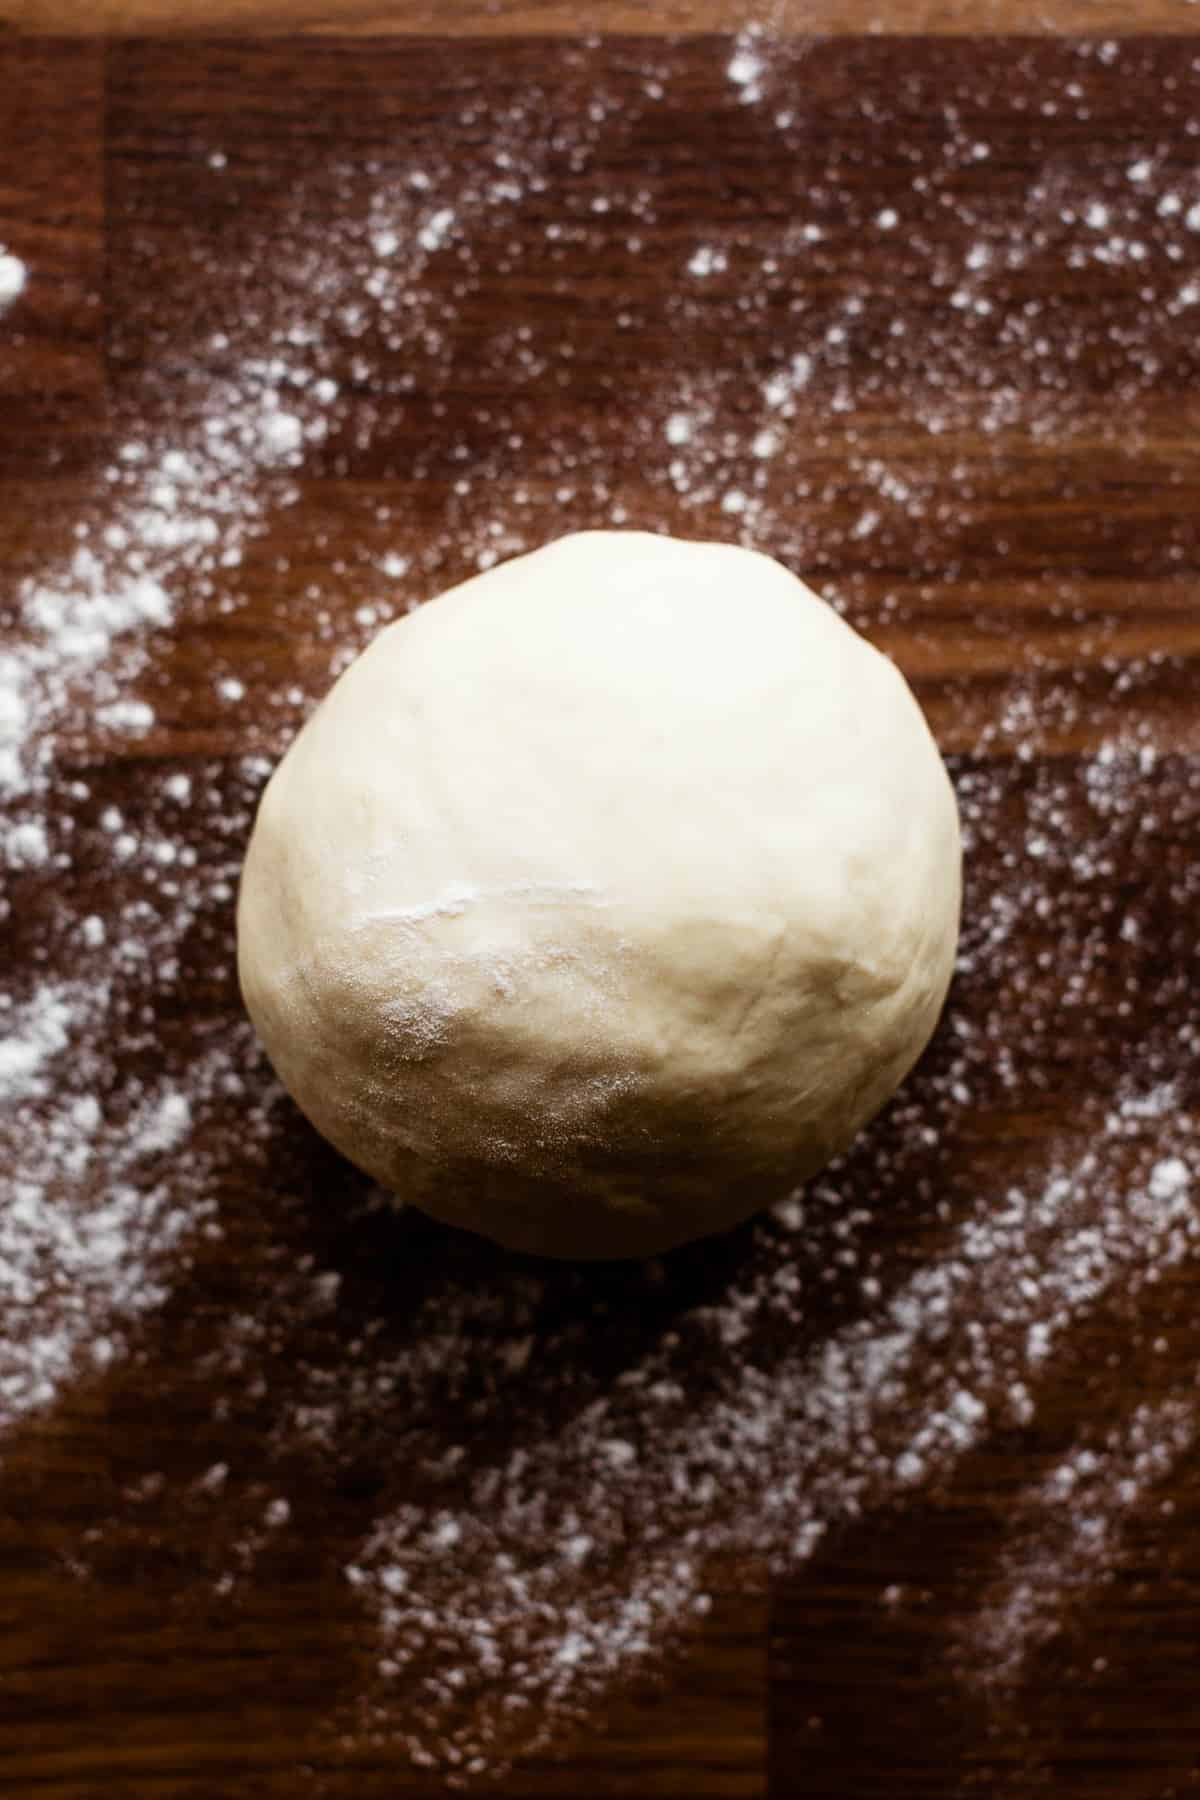 Focaccia dough ball after kneading.